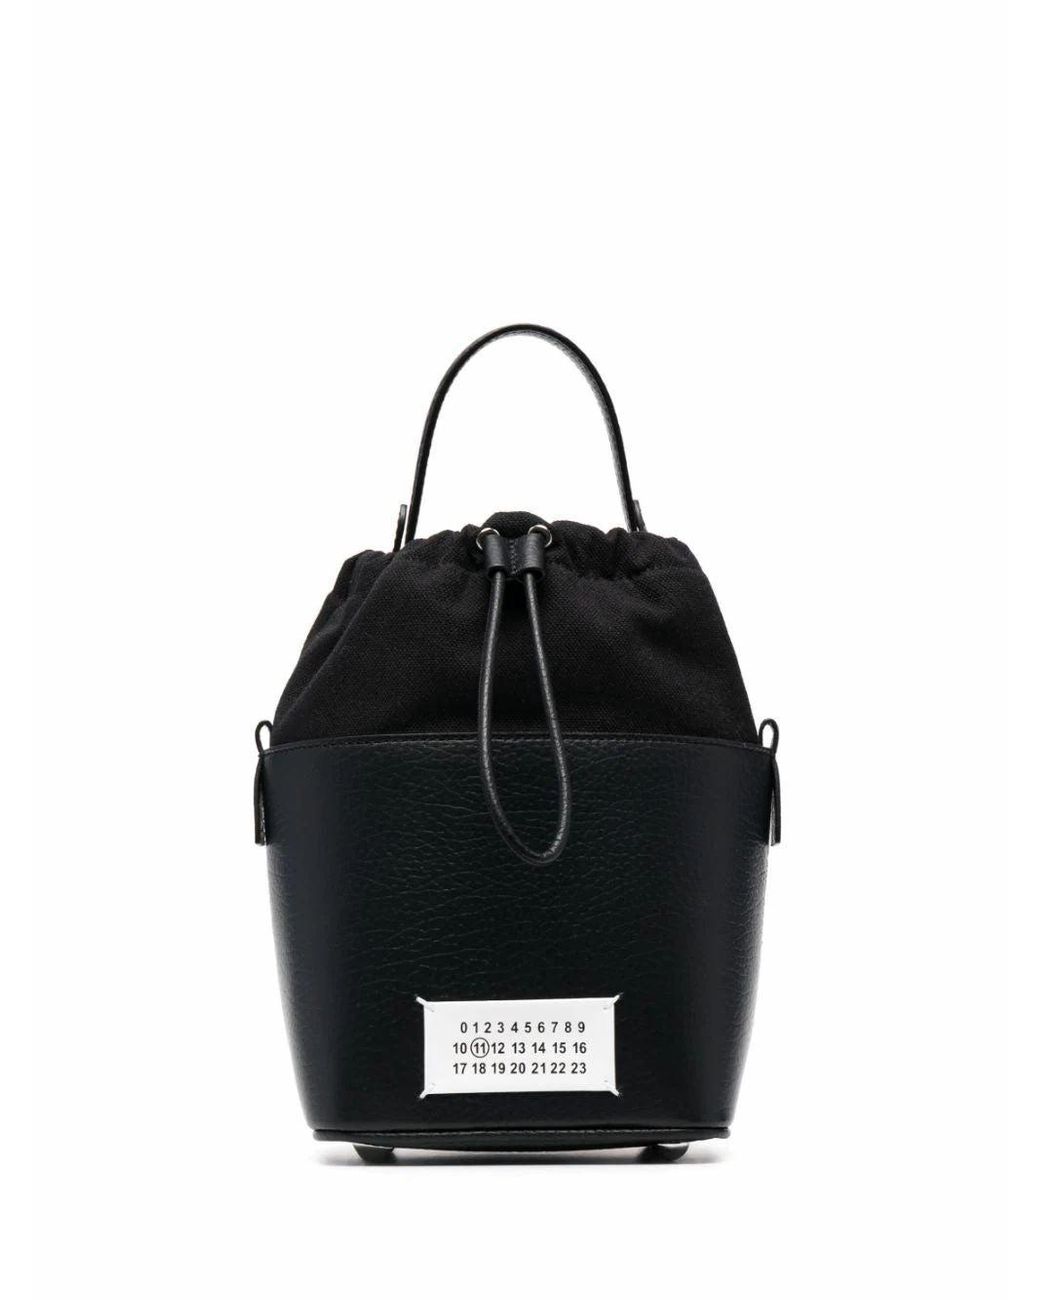 Maison Margiela Leather Shoulder Bag in Black - Save 21% - Lyst